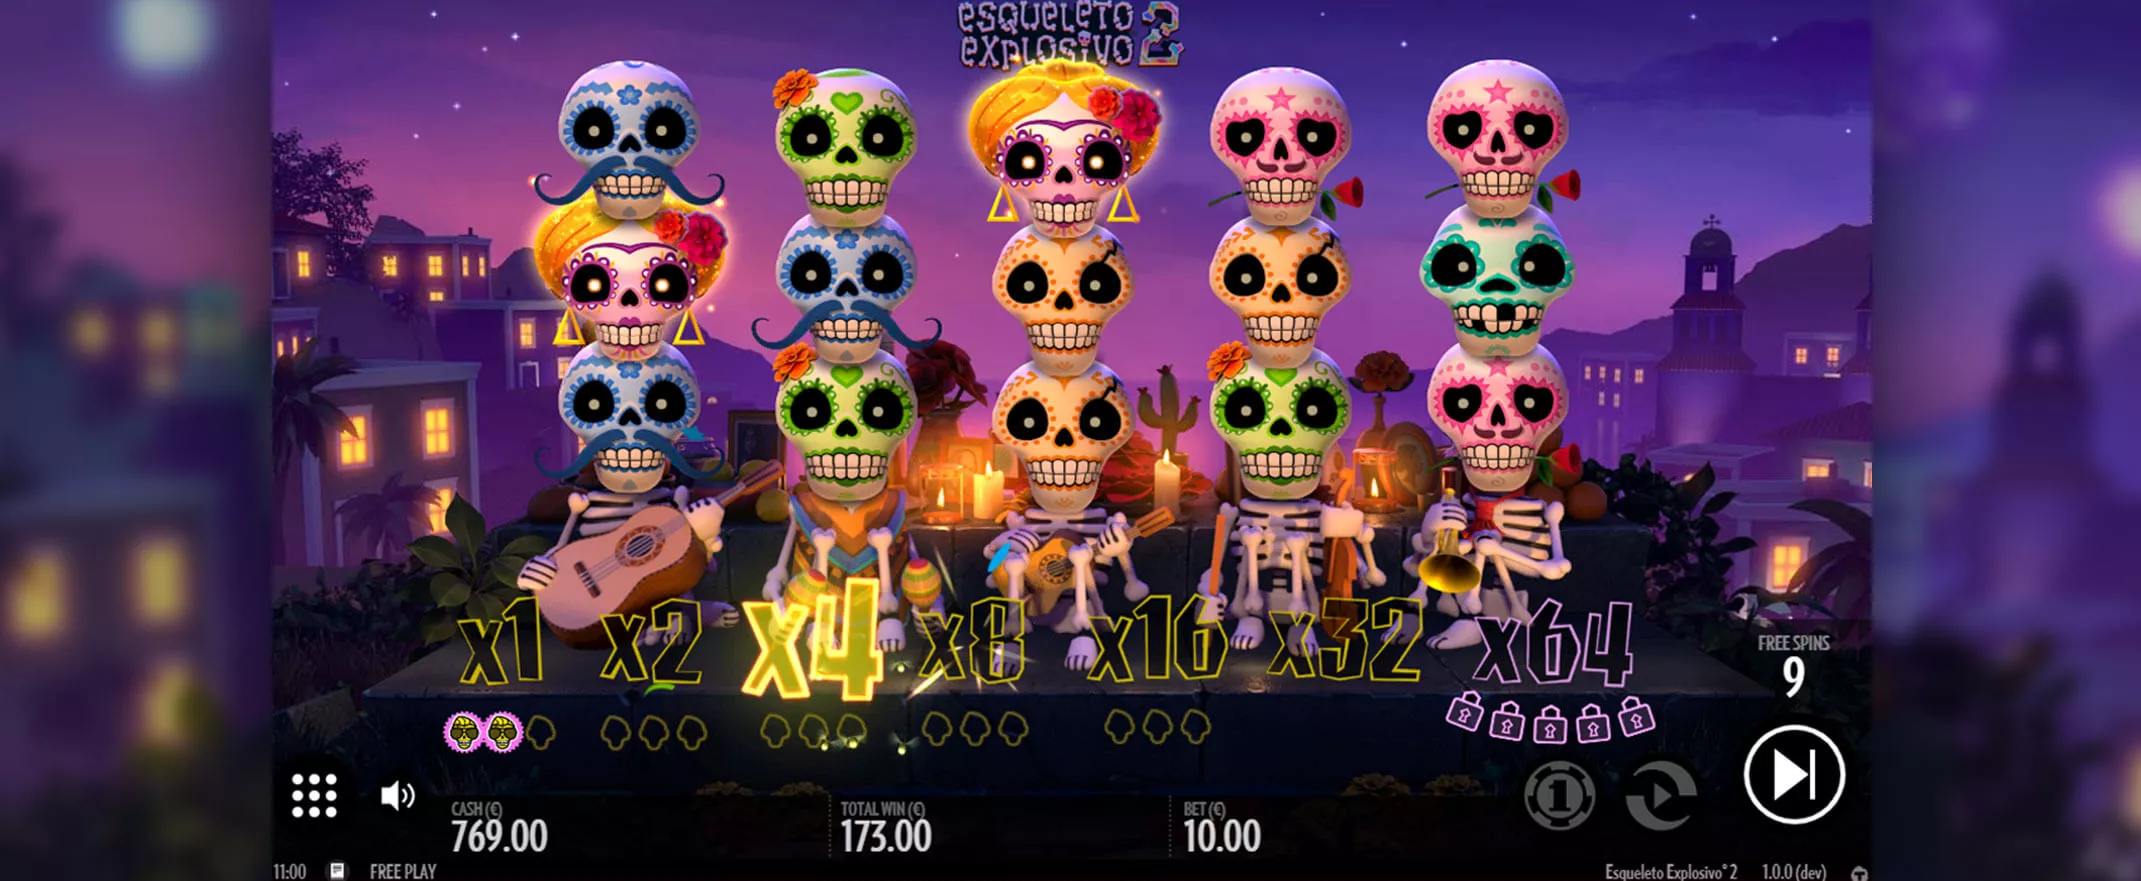 Captura de pantalla de Esqueleto Explosivo 2